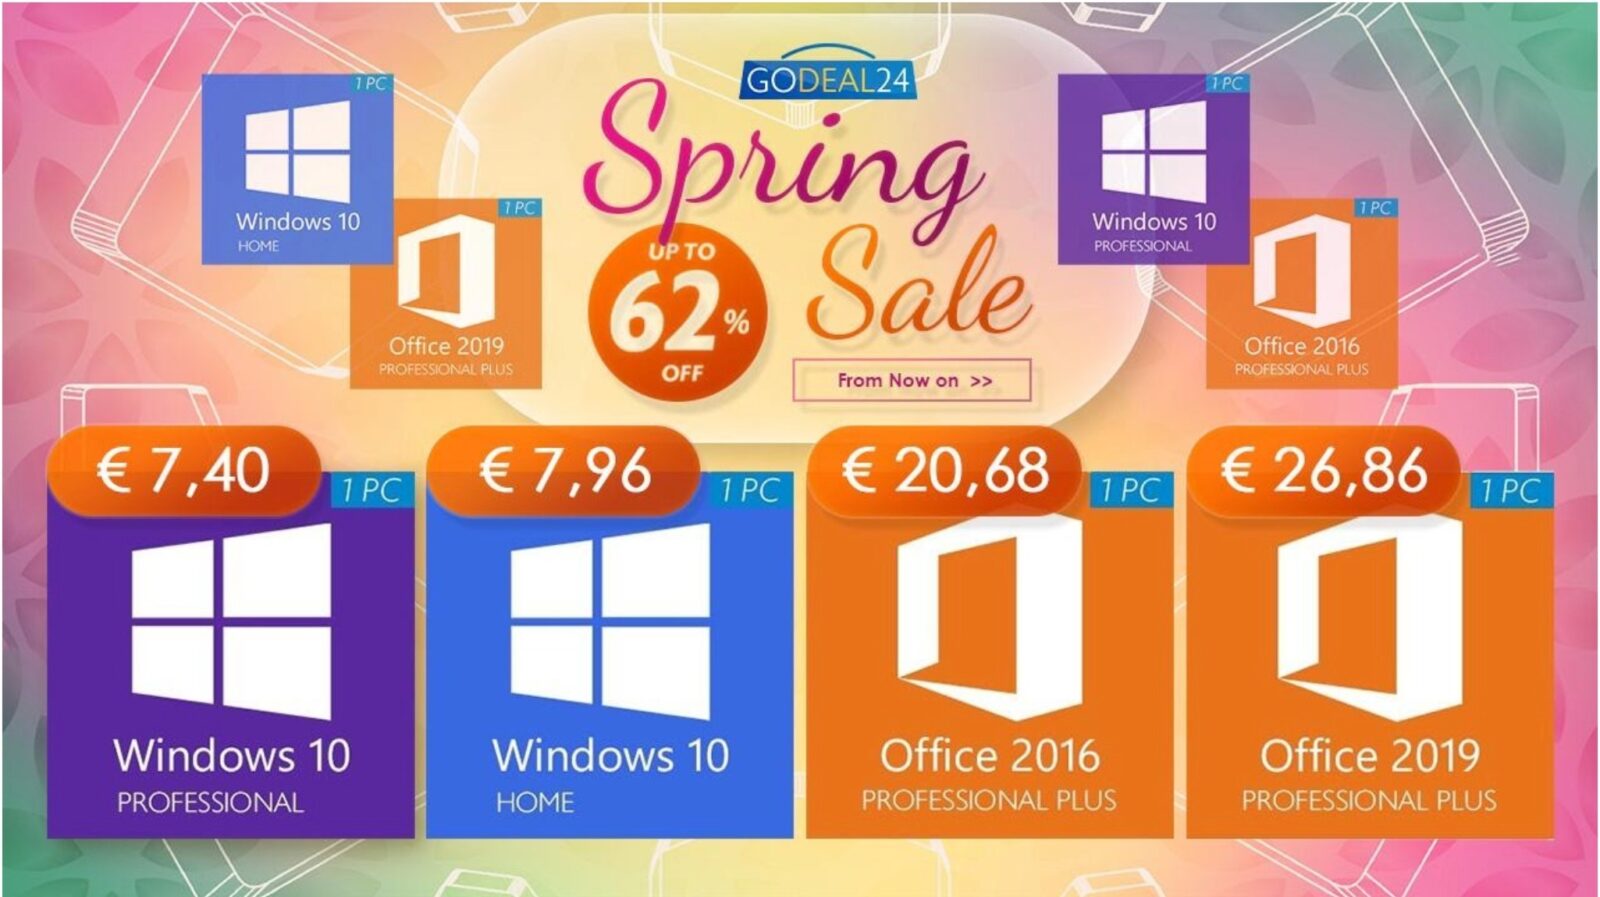 Solo 15 euro per Microsoft Office, solo 7 € per Windows 10: arrivano gli sconti di primavera su Godeal24